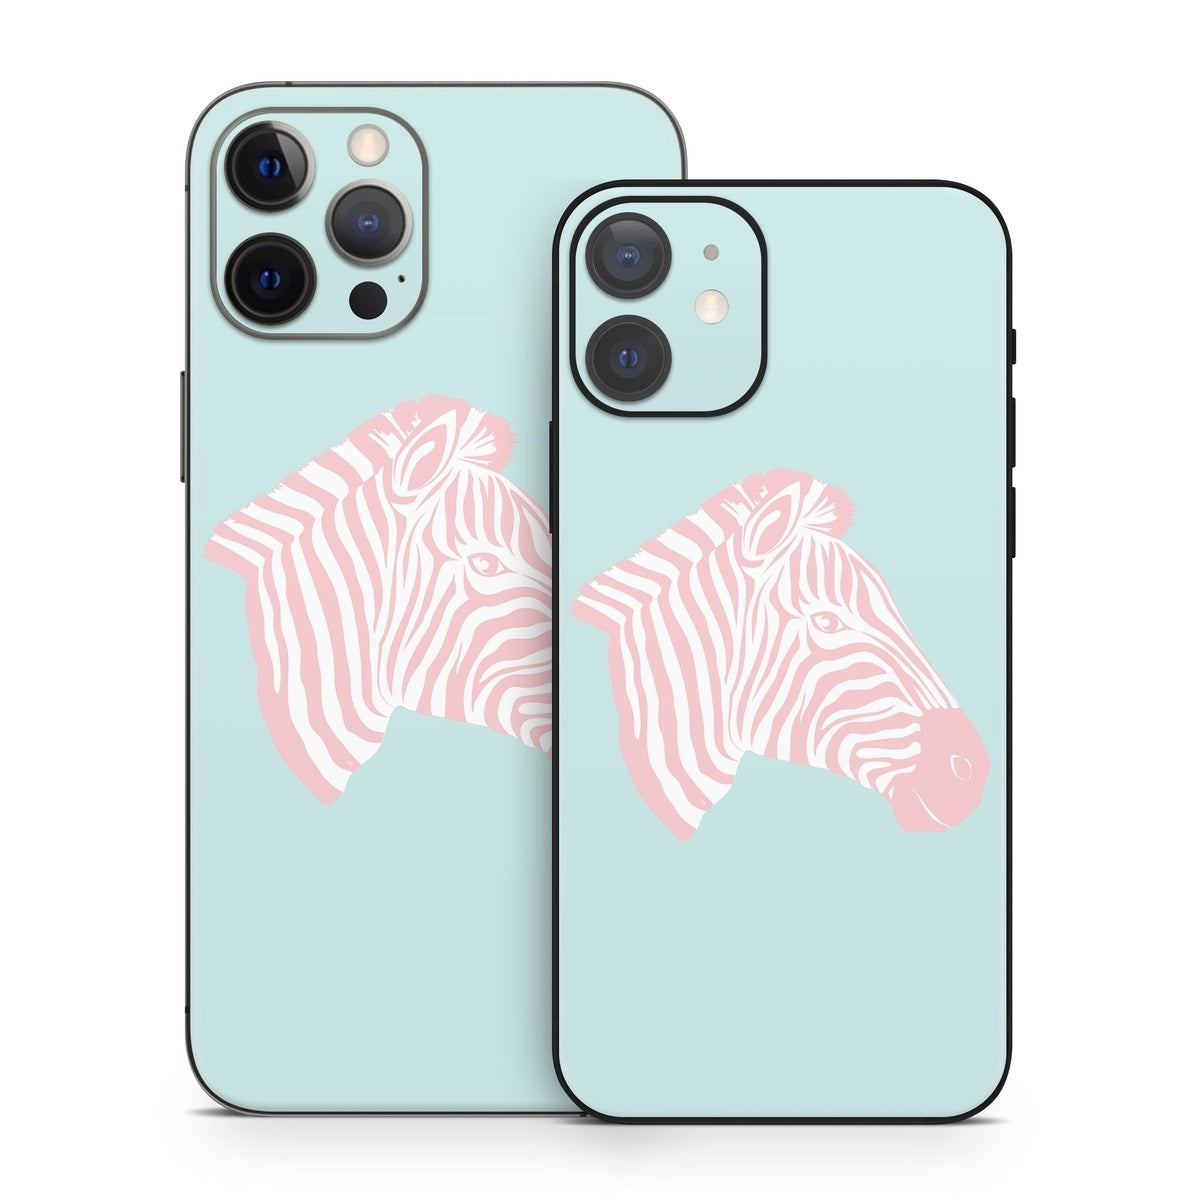 Sweet Zebra - Apple iPhone 12 Skin